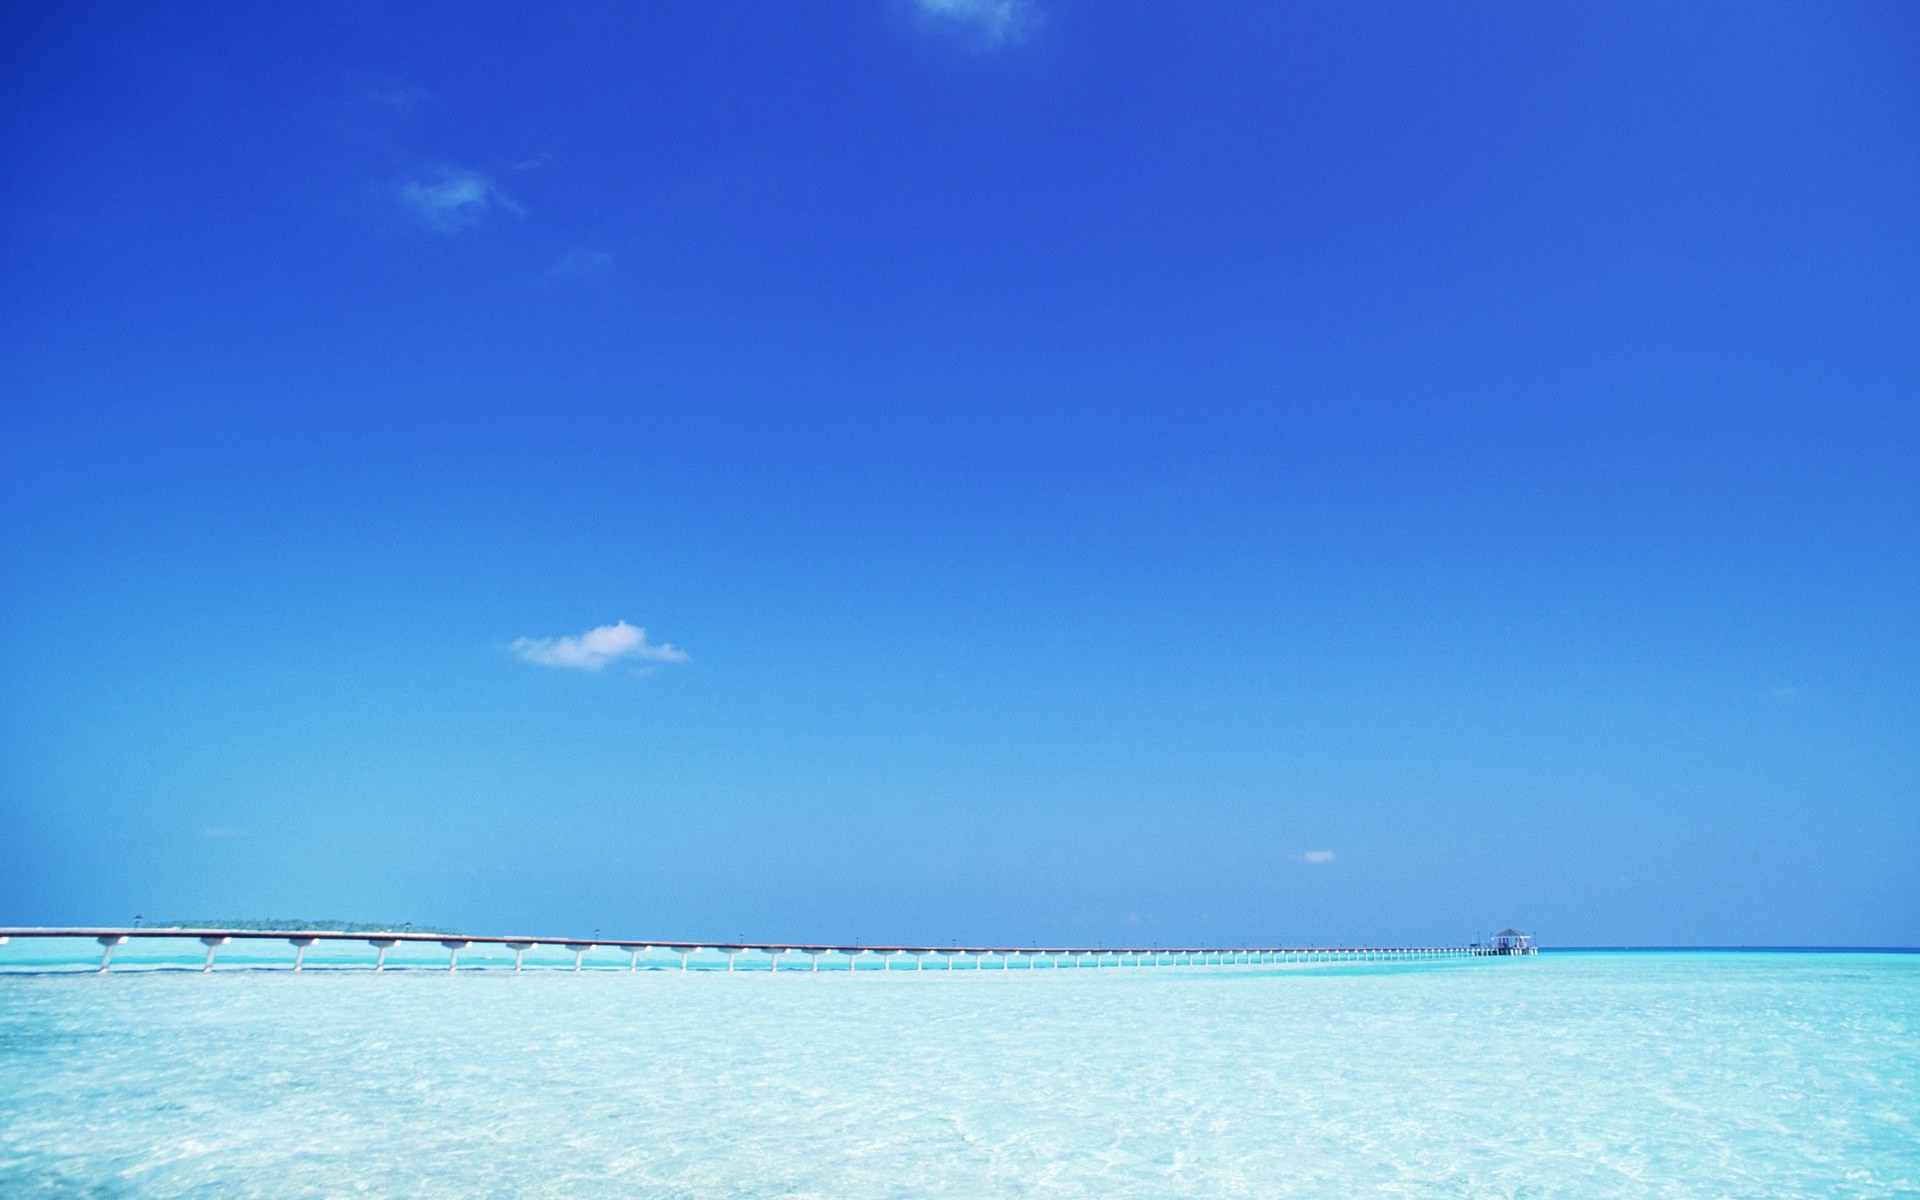 Maledivy vody a modrou oblohu #22 - 1920x1200